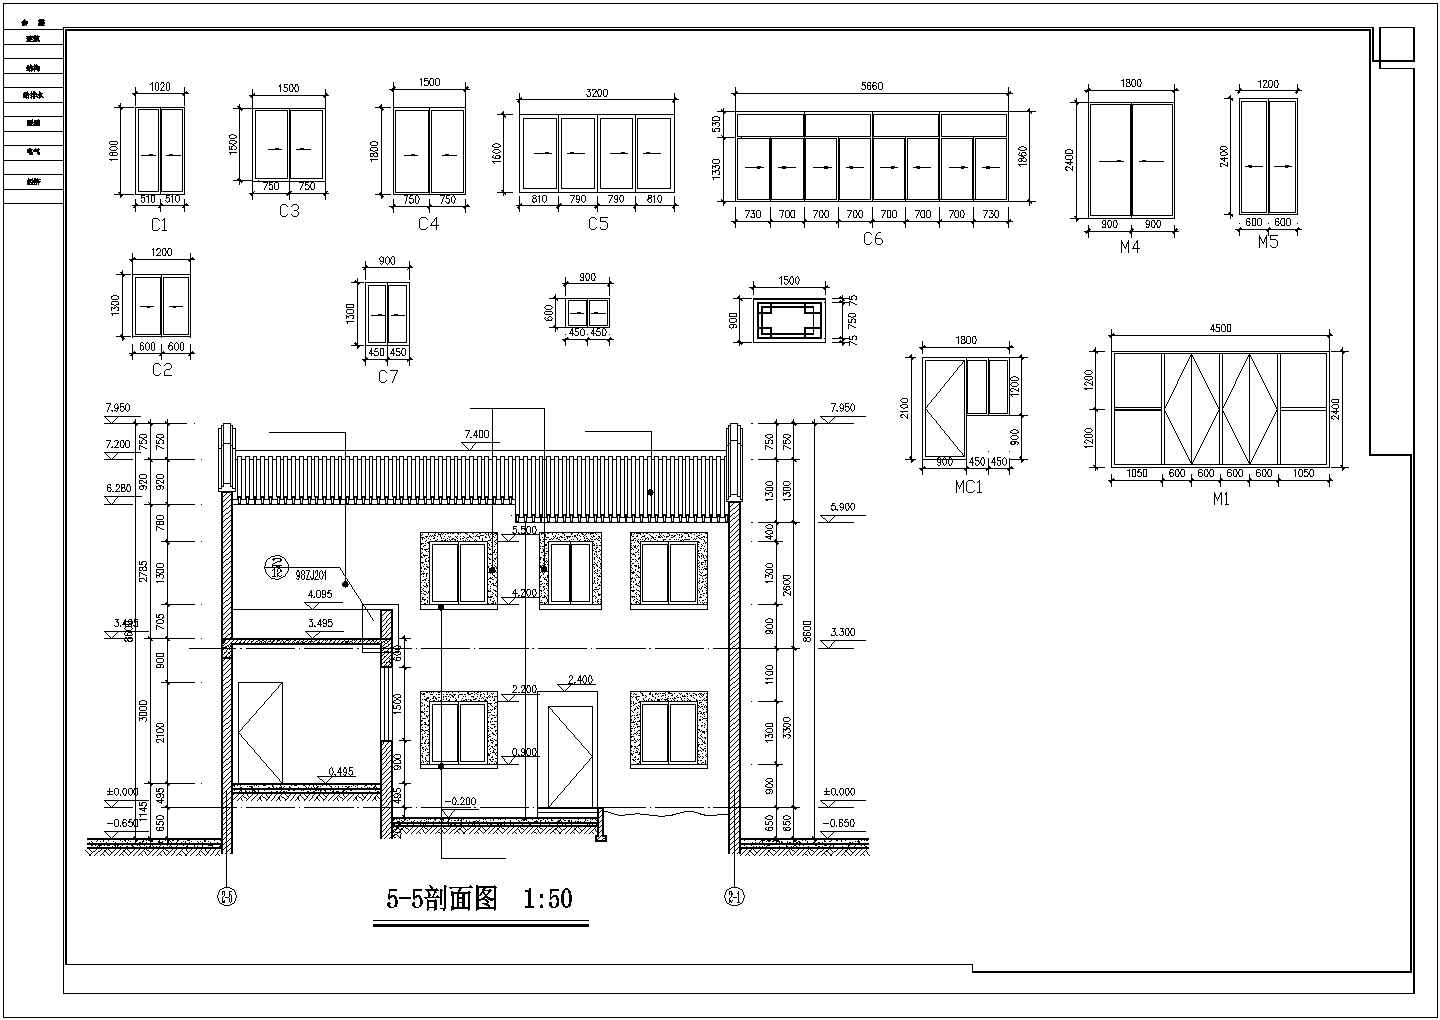 舟山市某村镇1200平米2层砖混结构四合院式民居楼建筑设计CAD图纸